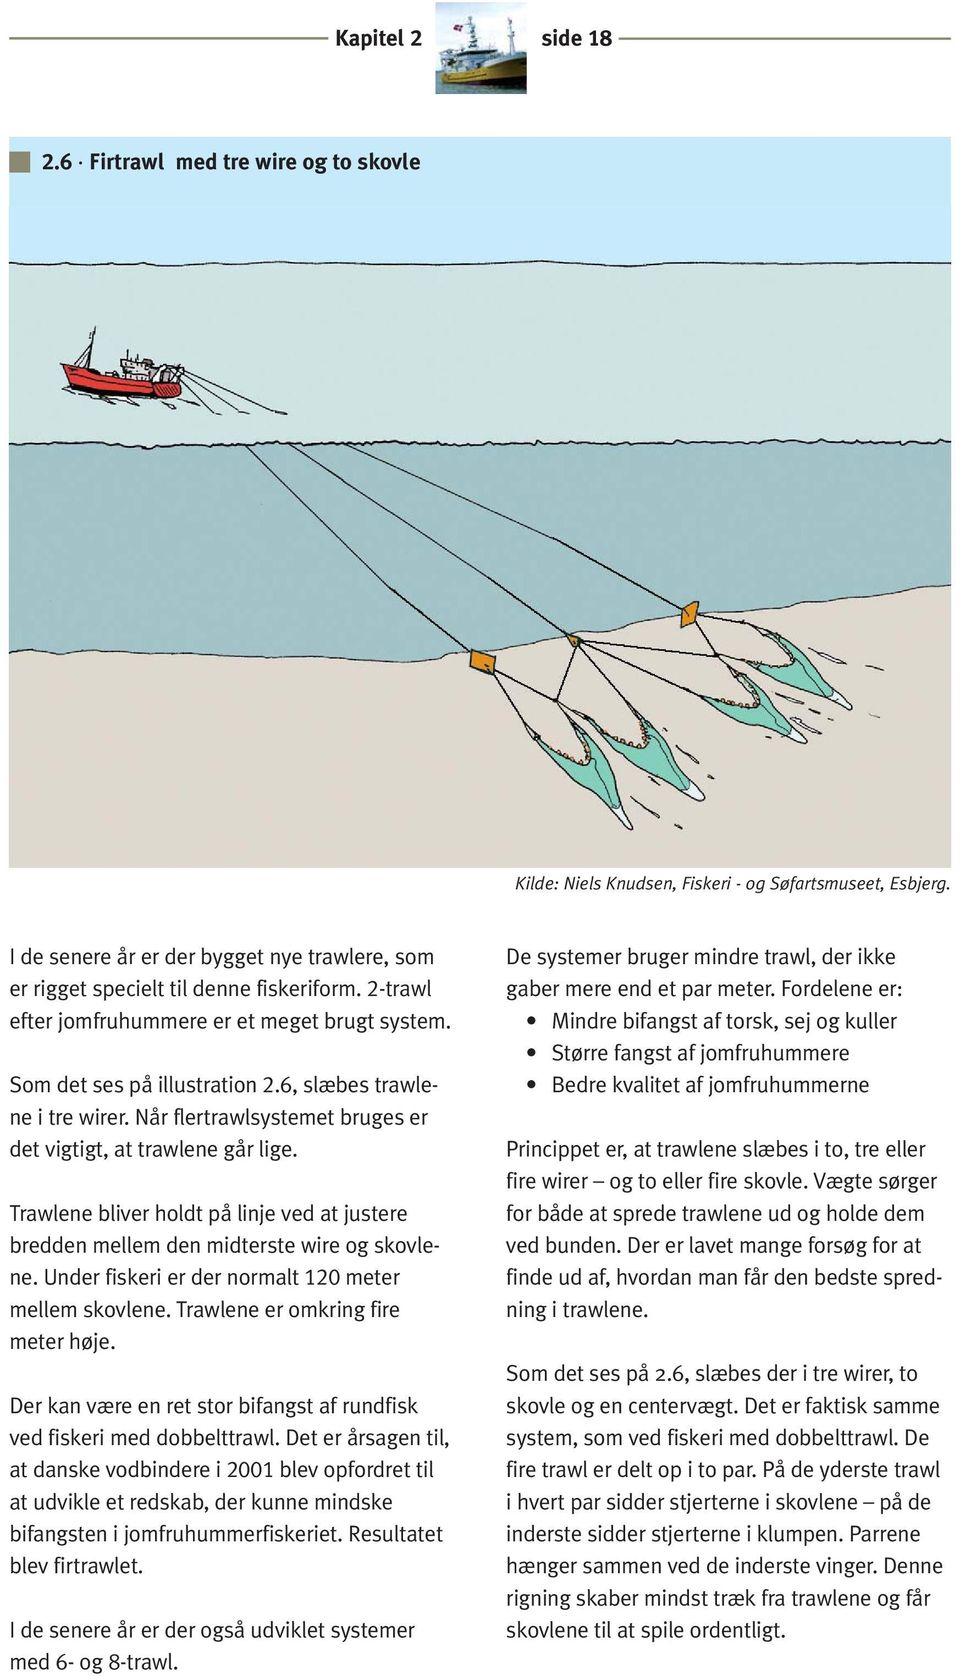 Trawlene bliver holdt på linje ved at justere bredden mellem den midterste wire og skovlene. Under fiskeri er der normalt 120 meter mellem skovlene. Trawlene er omkring fire meter høje.